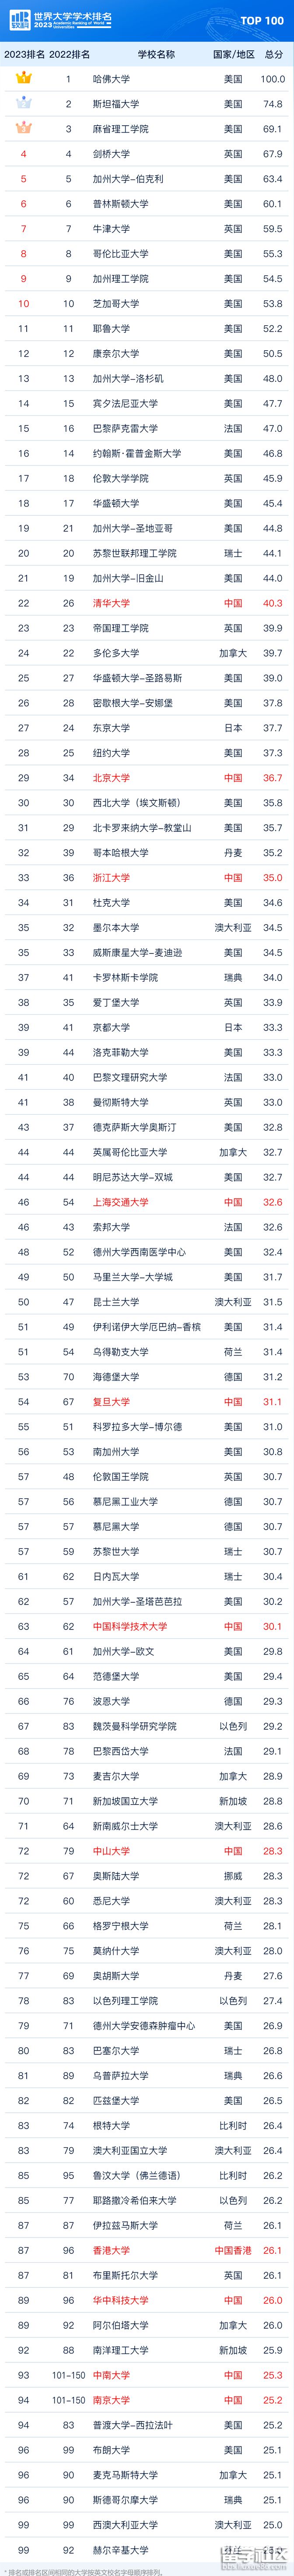 又一权威大学排名发布！中国高校进步明显清华大学获亚洲冠军！(图3)